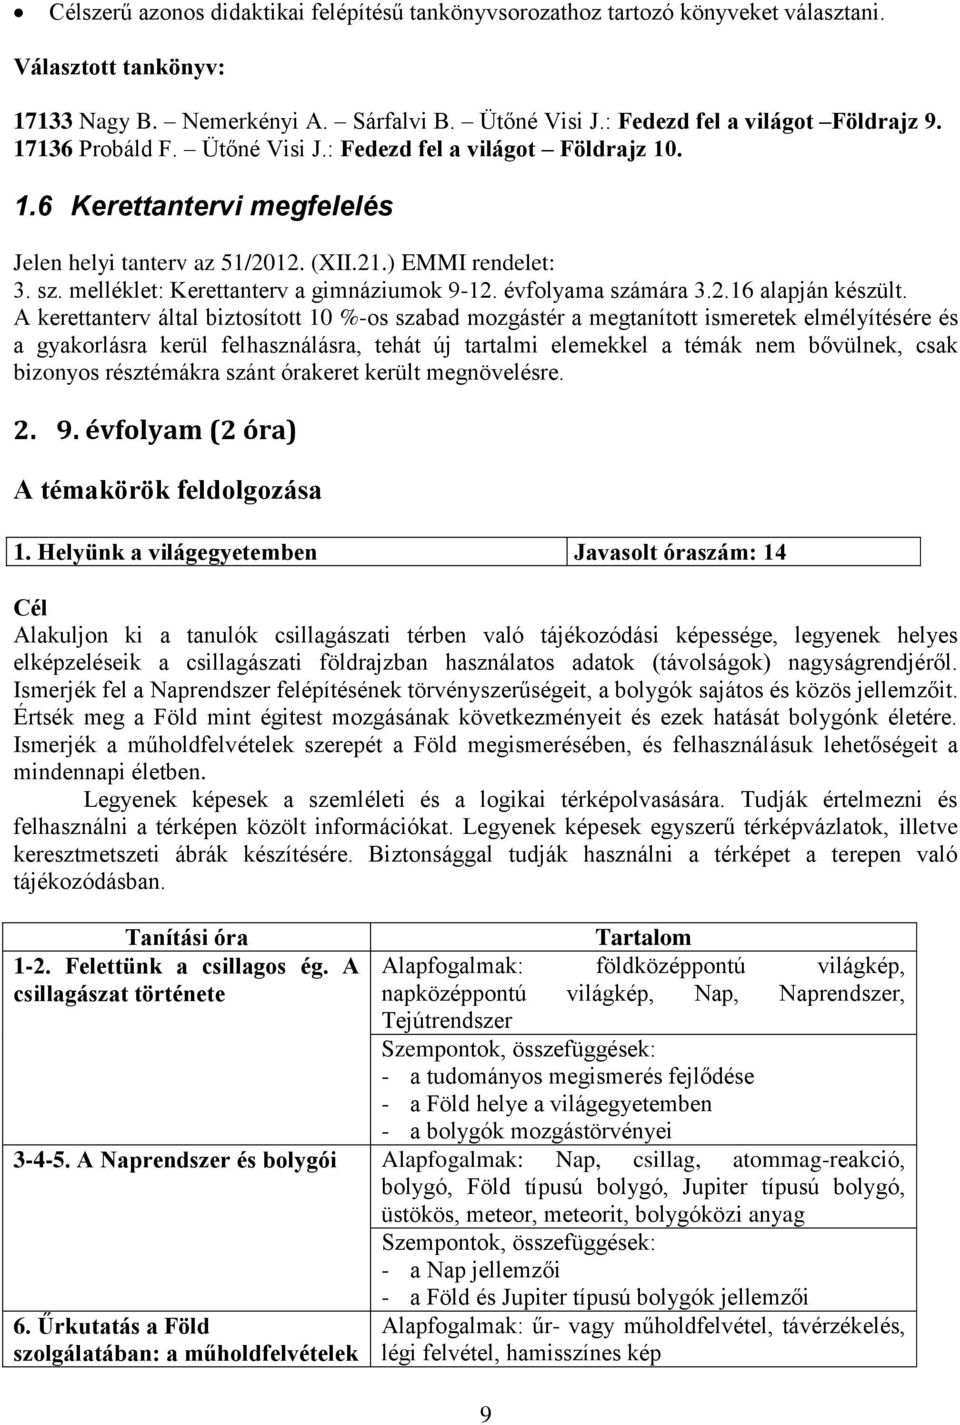 melléklet: Kerettanterv a gimnáziumok 9-12. évfolyama számára 3.2.16 alapján készült.